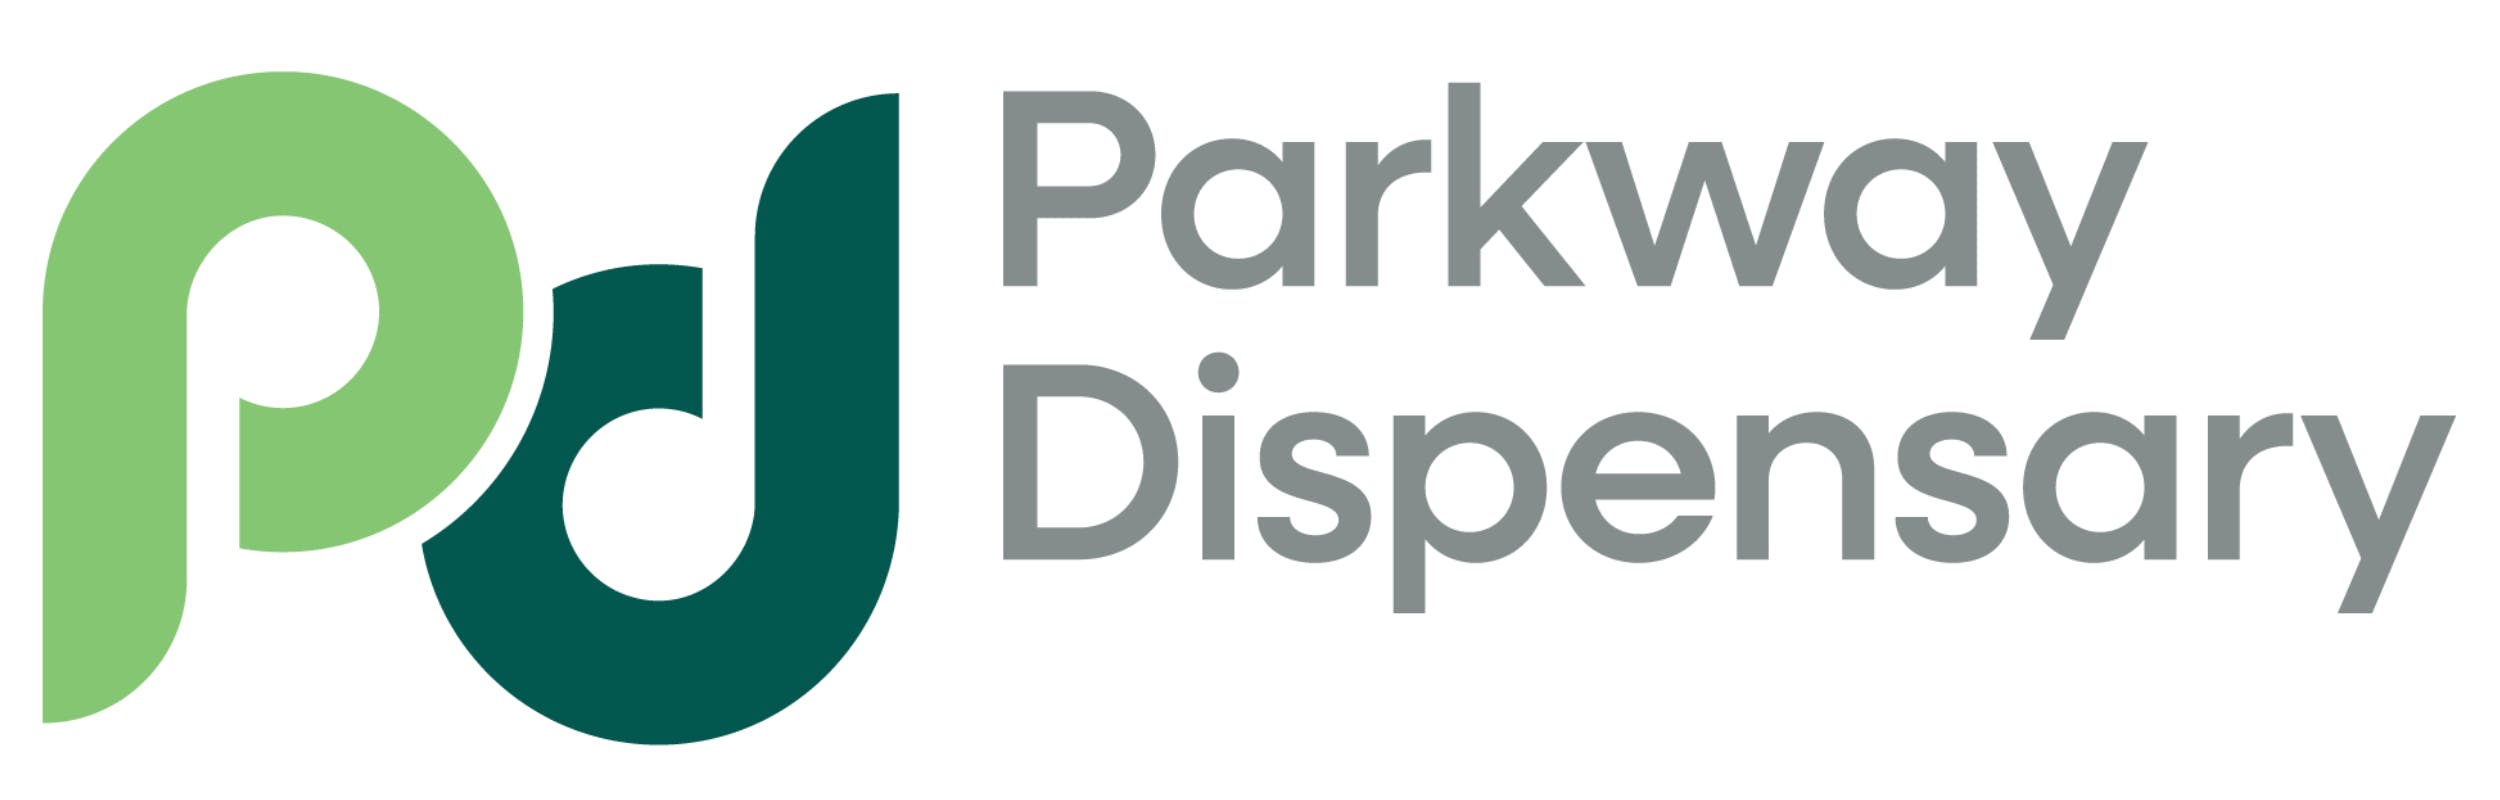 Parkway Dispensary (Rec) logo